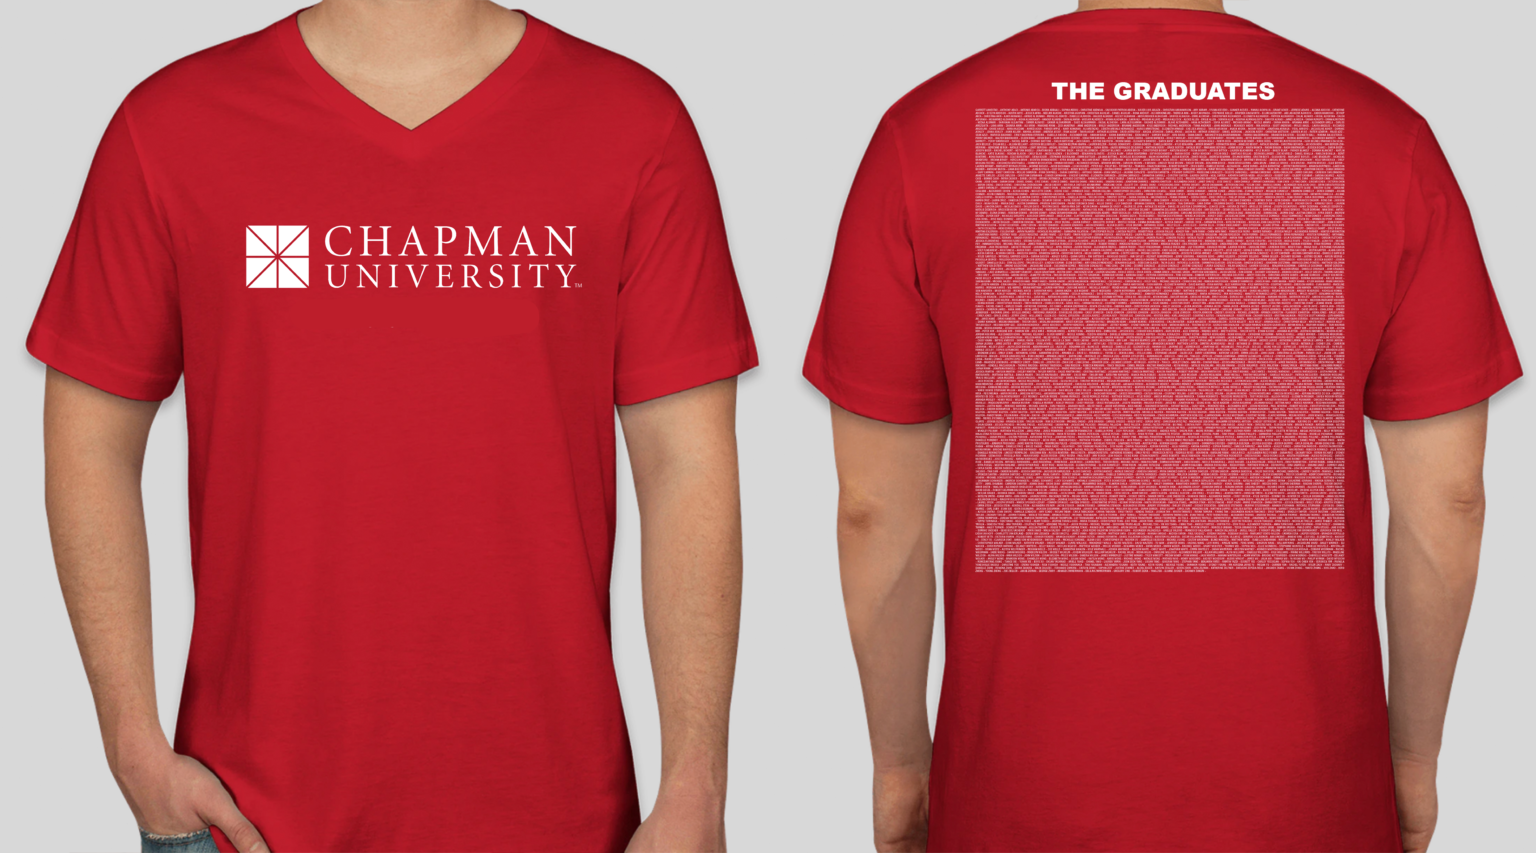 Chapman University Commencement Group